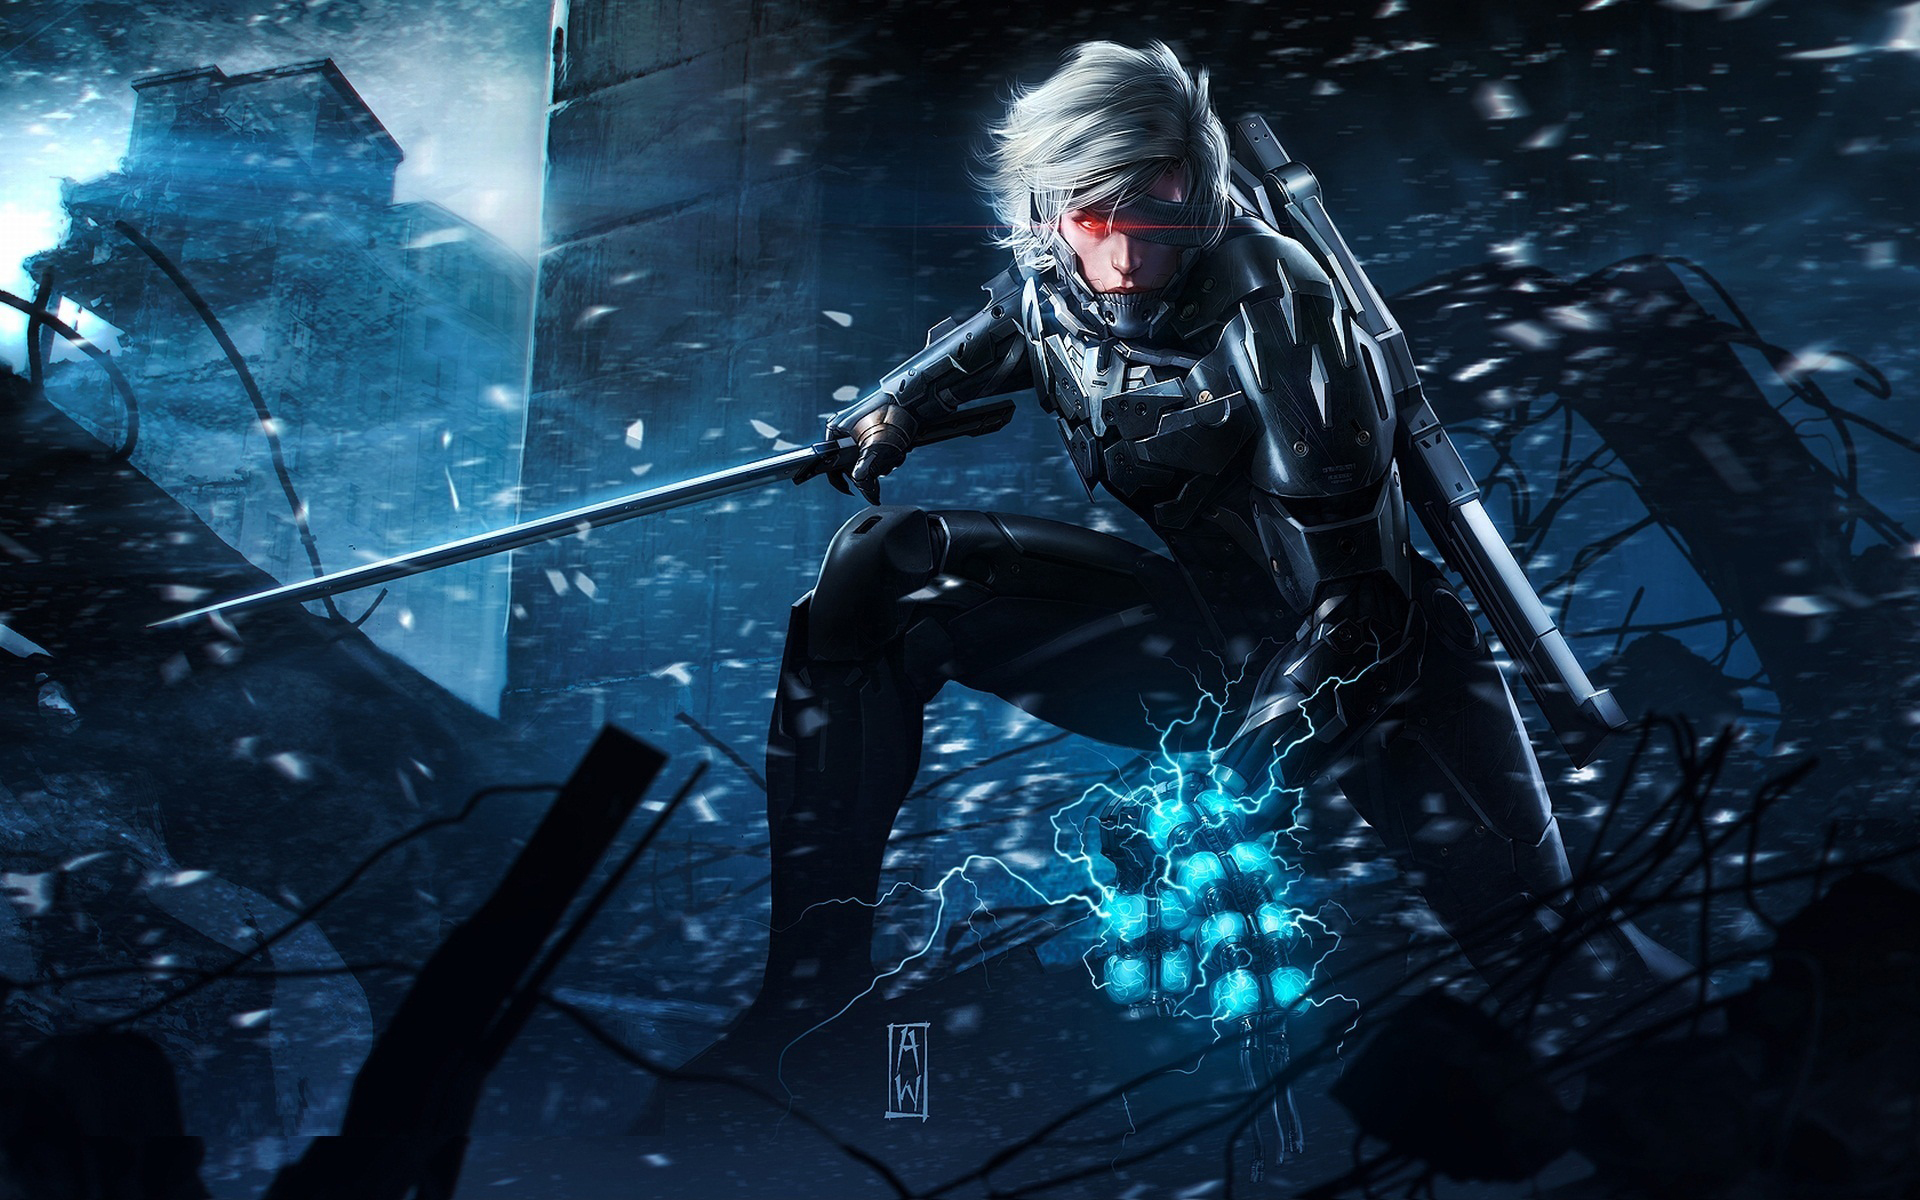 Bạn đang tìm kiếm một hình nền game đầy hấp dẫn cho màn hình máy tính của mình? Metal Gear Rising Revengeance chính là điều bạn đang cần! Với đồ họa tuyệt vời và đầy màu sắc, hình nền này sẽ mang đến cho bạn một trải nghiệm thú vị với thế giới game đầy hồi hộp. Tải ngay miễn phí để trải nghiệm điều này!